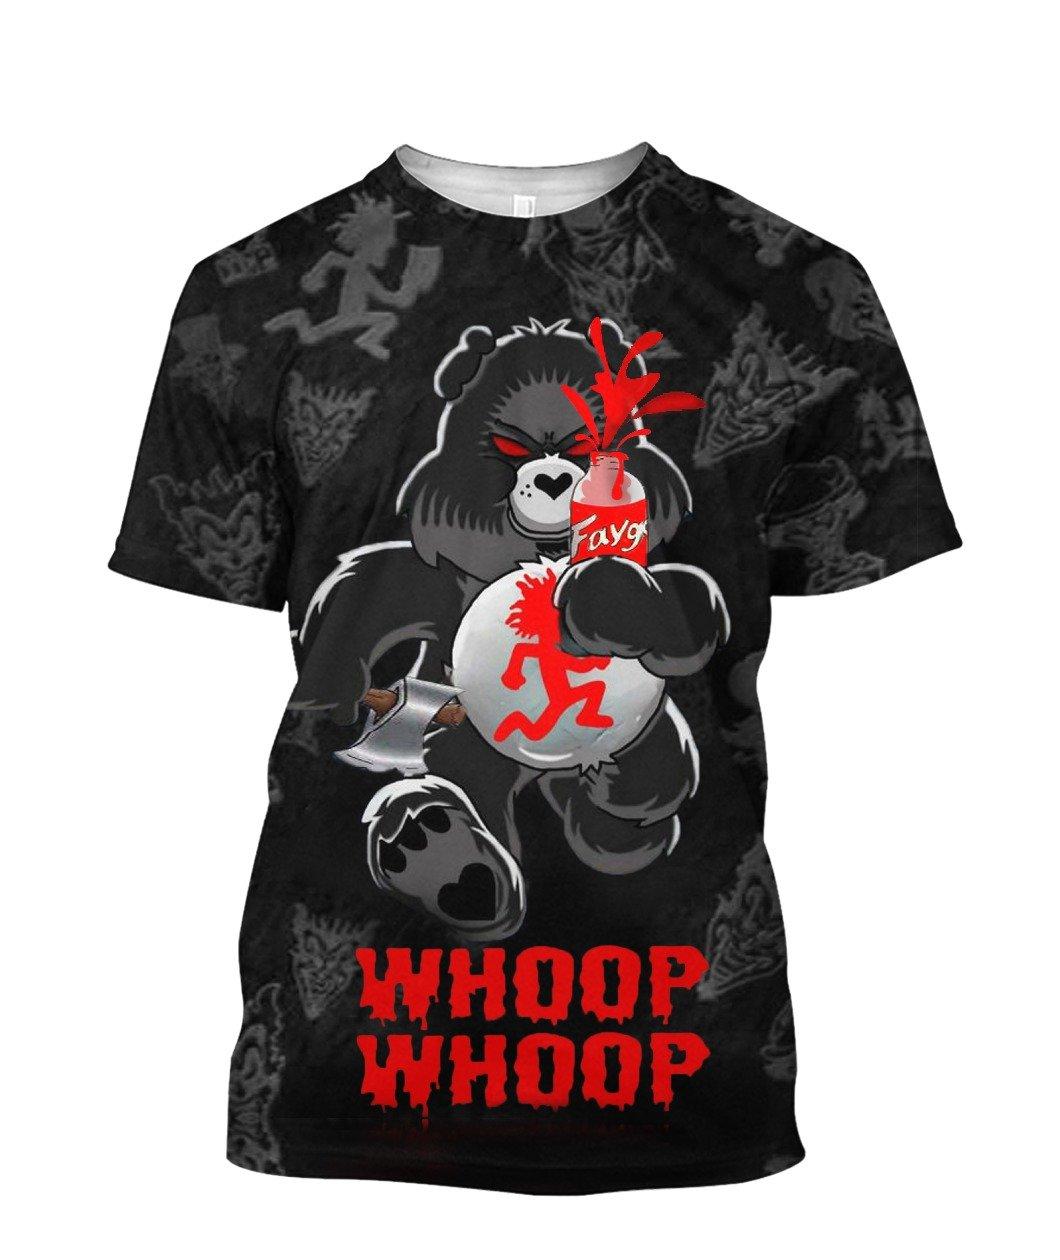 Whoop Whoop Insane Clown Posse Sugar Bear 3d Printed Shirt